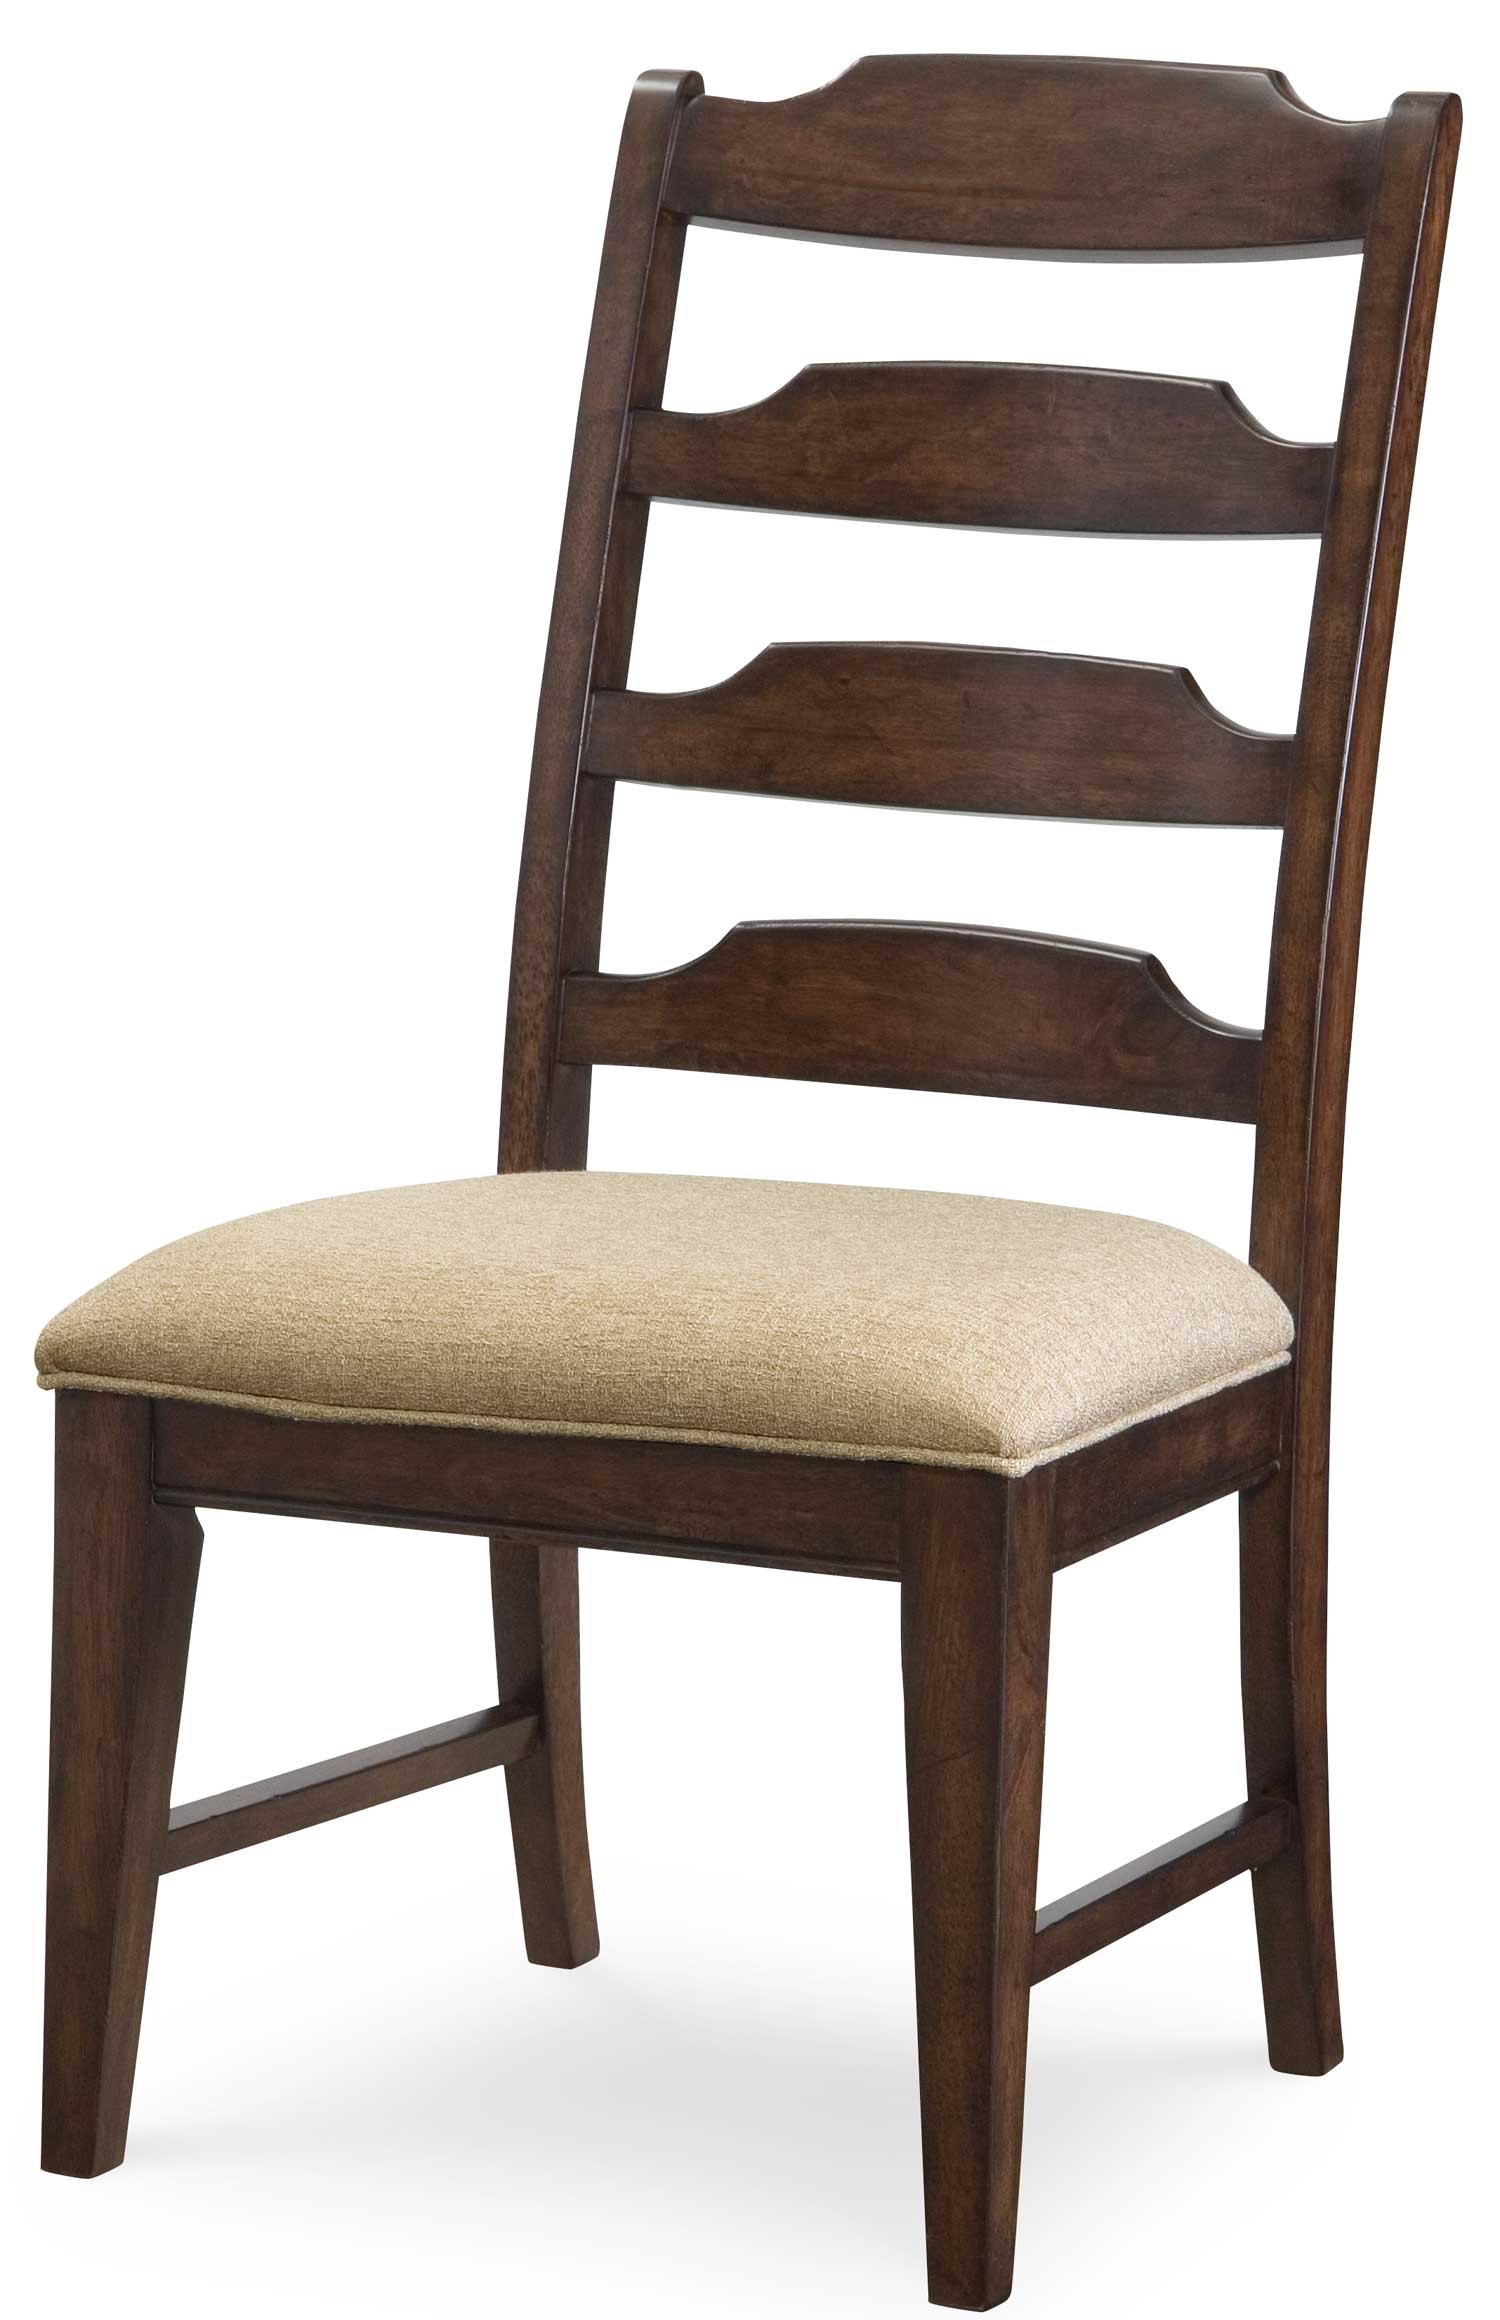 Legacy Classic Deer Valley Ladderback Side Chair - Dark Rum